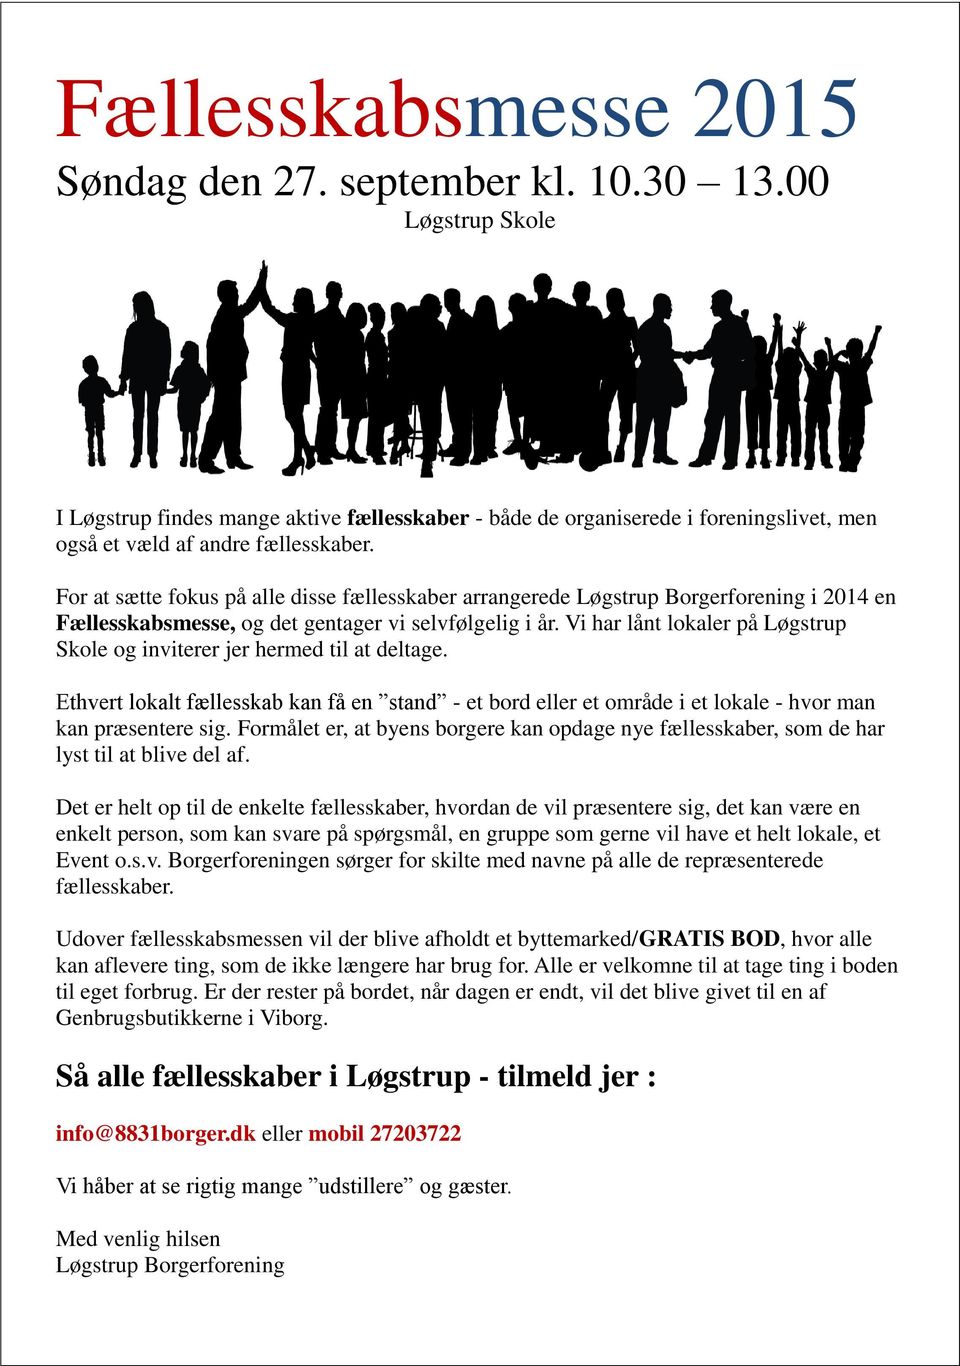 For at sætte fokus på alle disse fællesskaber arrangerede Løgstrup Borgerforening i 2014 en Fællesskabsmesse, og det gentager vi selvfølgelig i år.